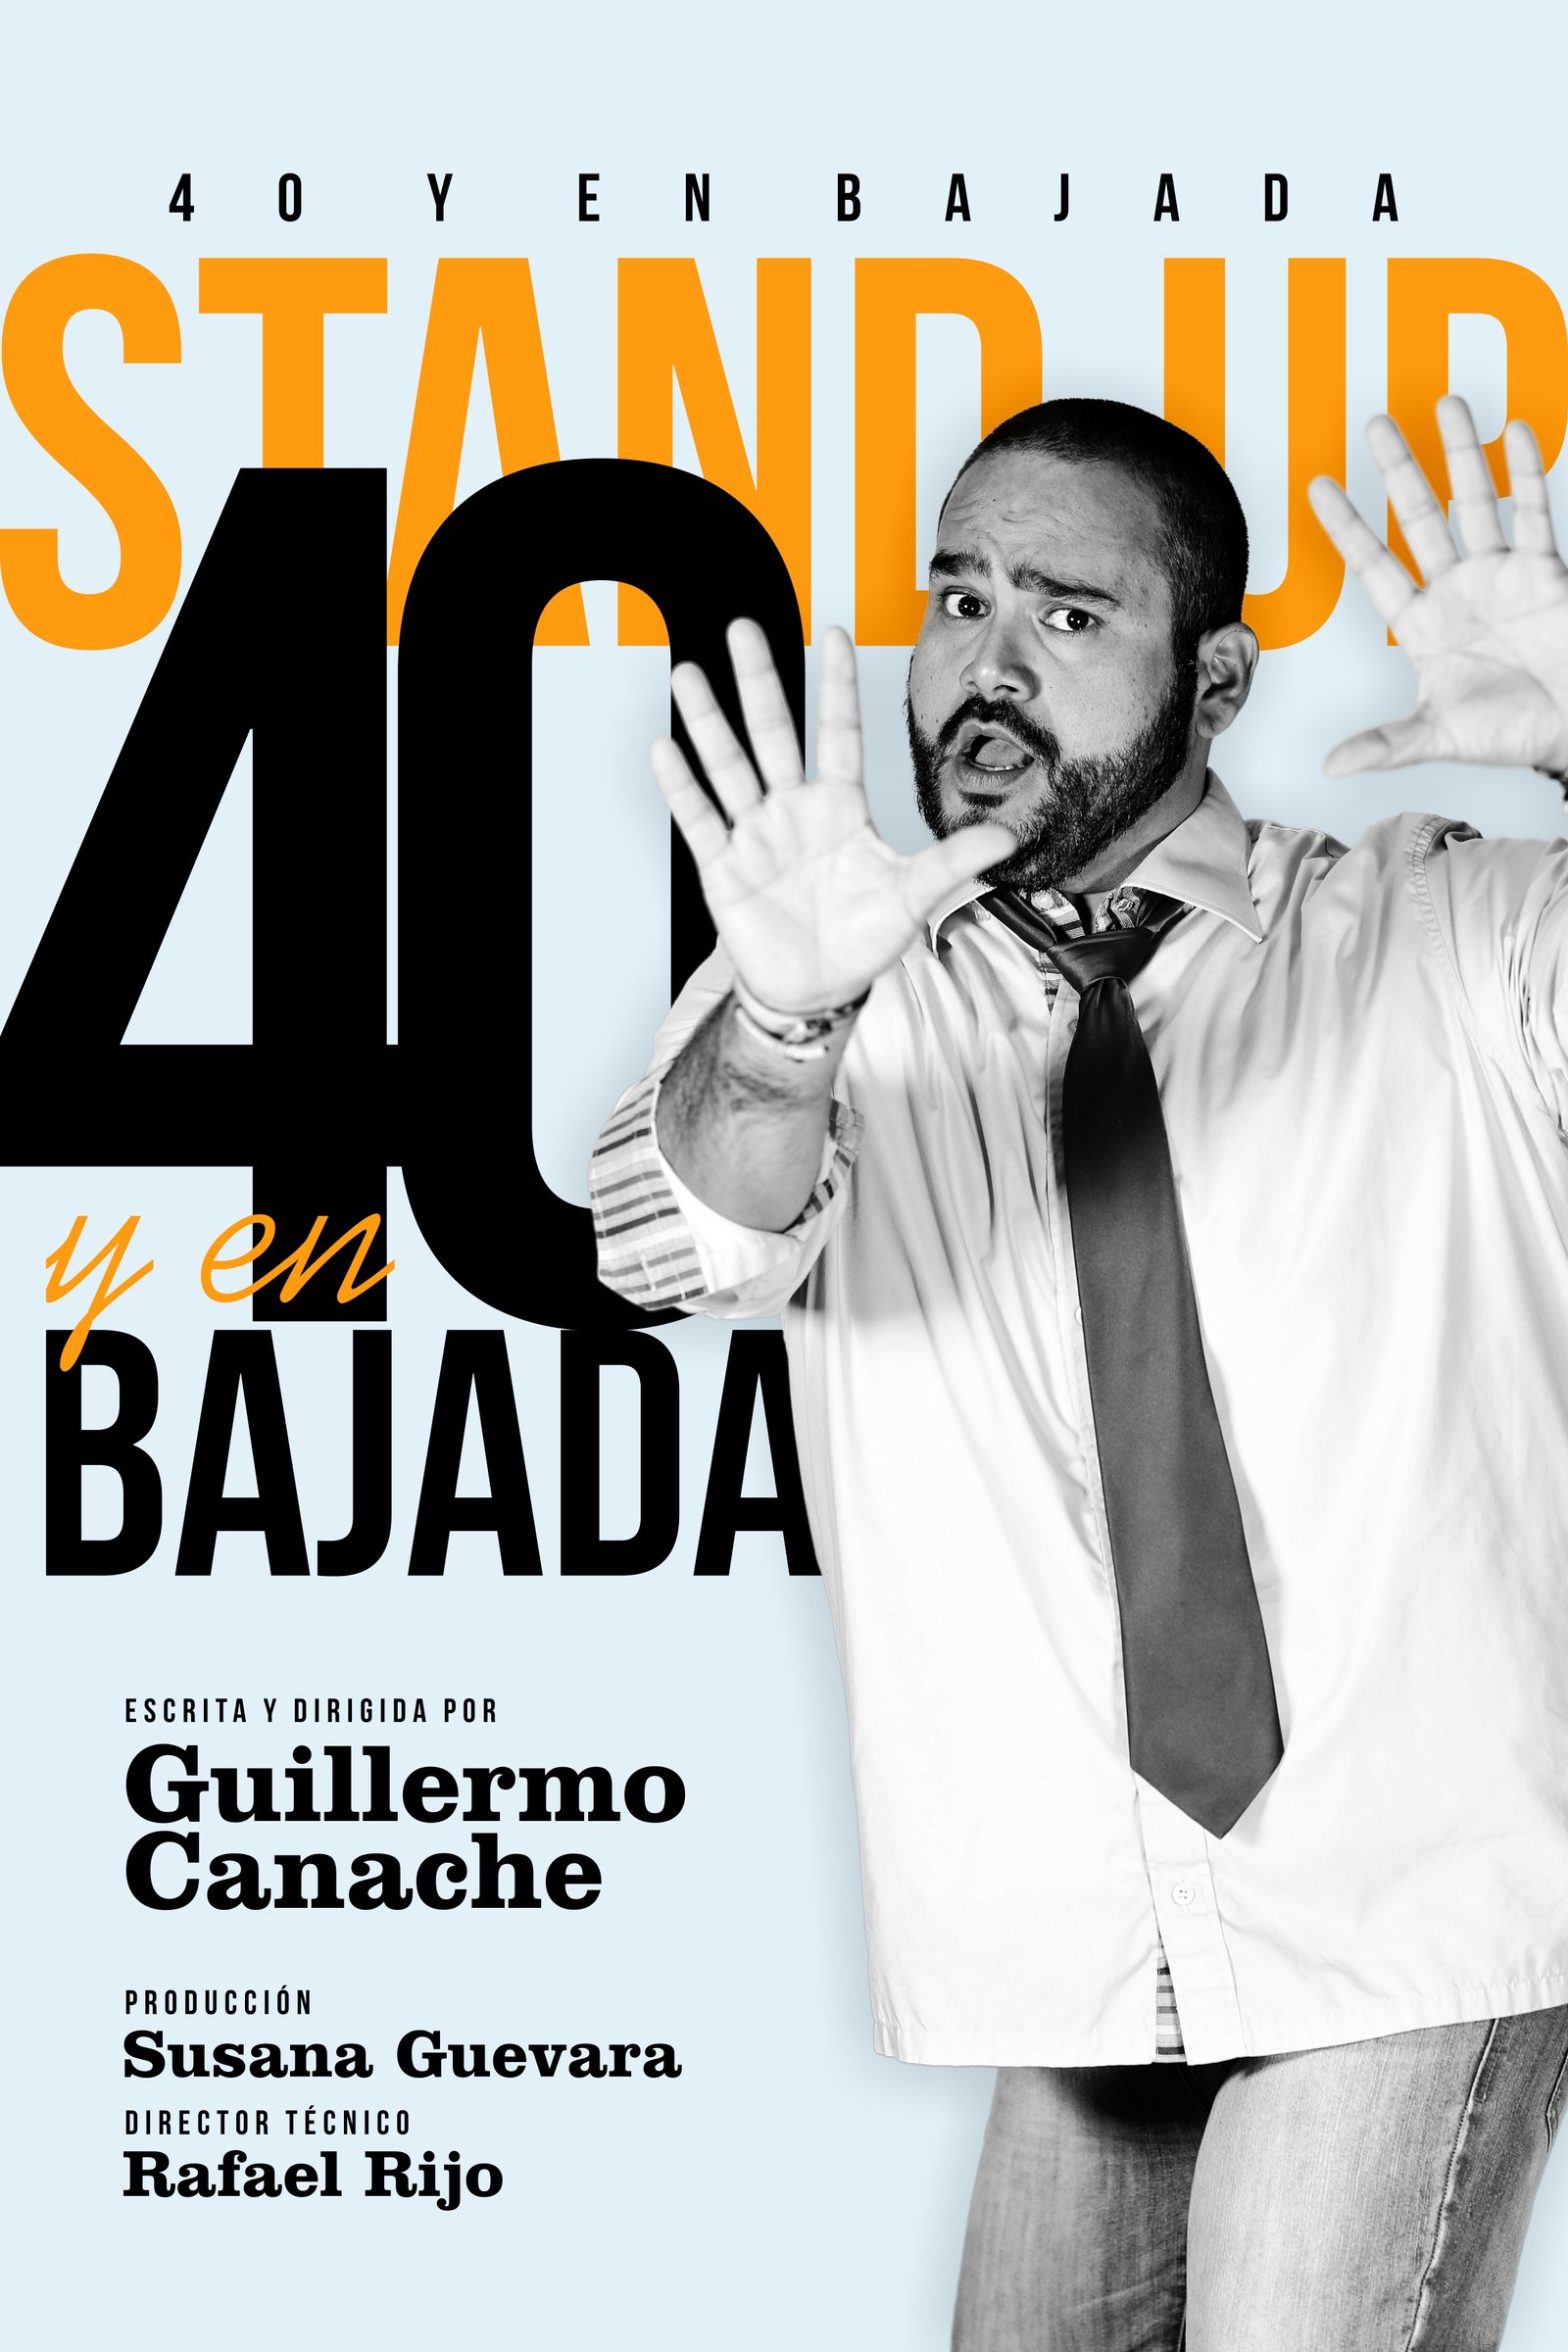 Guillermo Canache continúa presentaciones de “40 Y EN BAJADA” en el Centro Cultural BOD